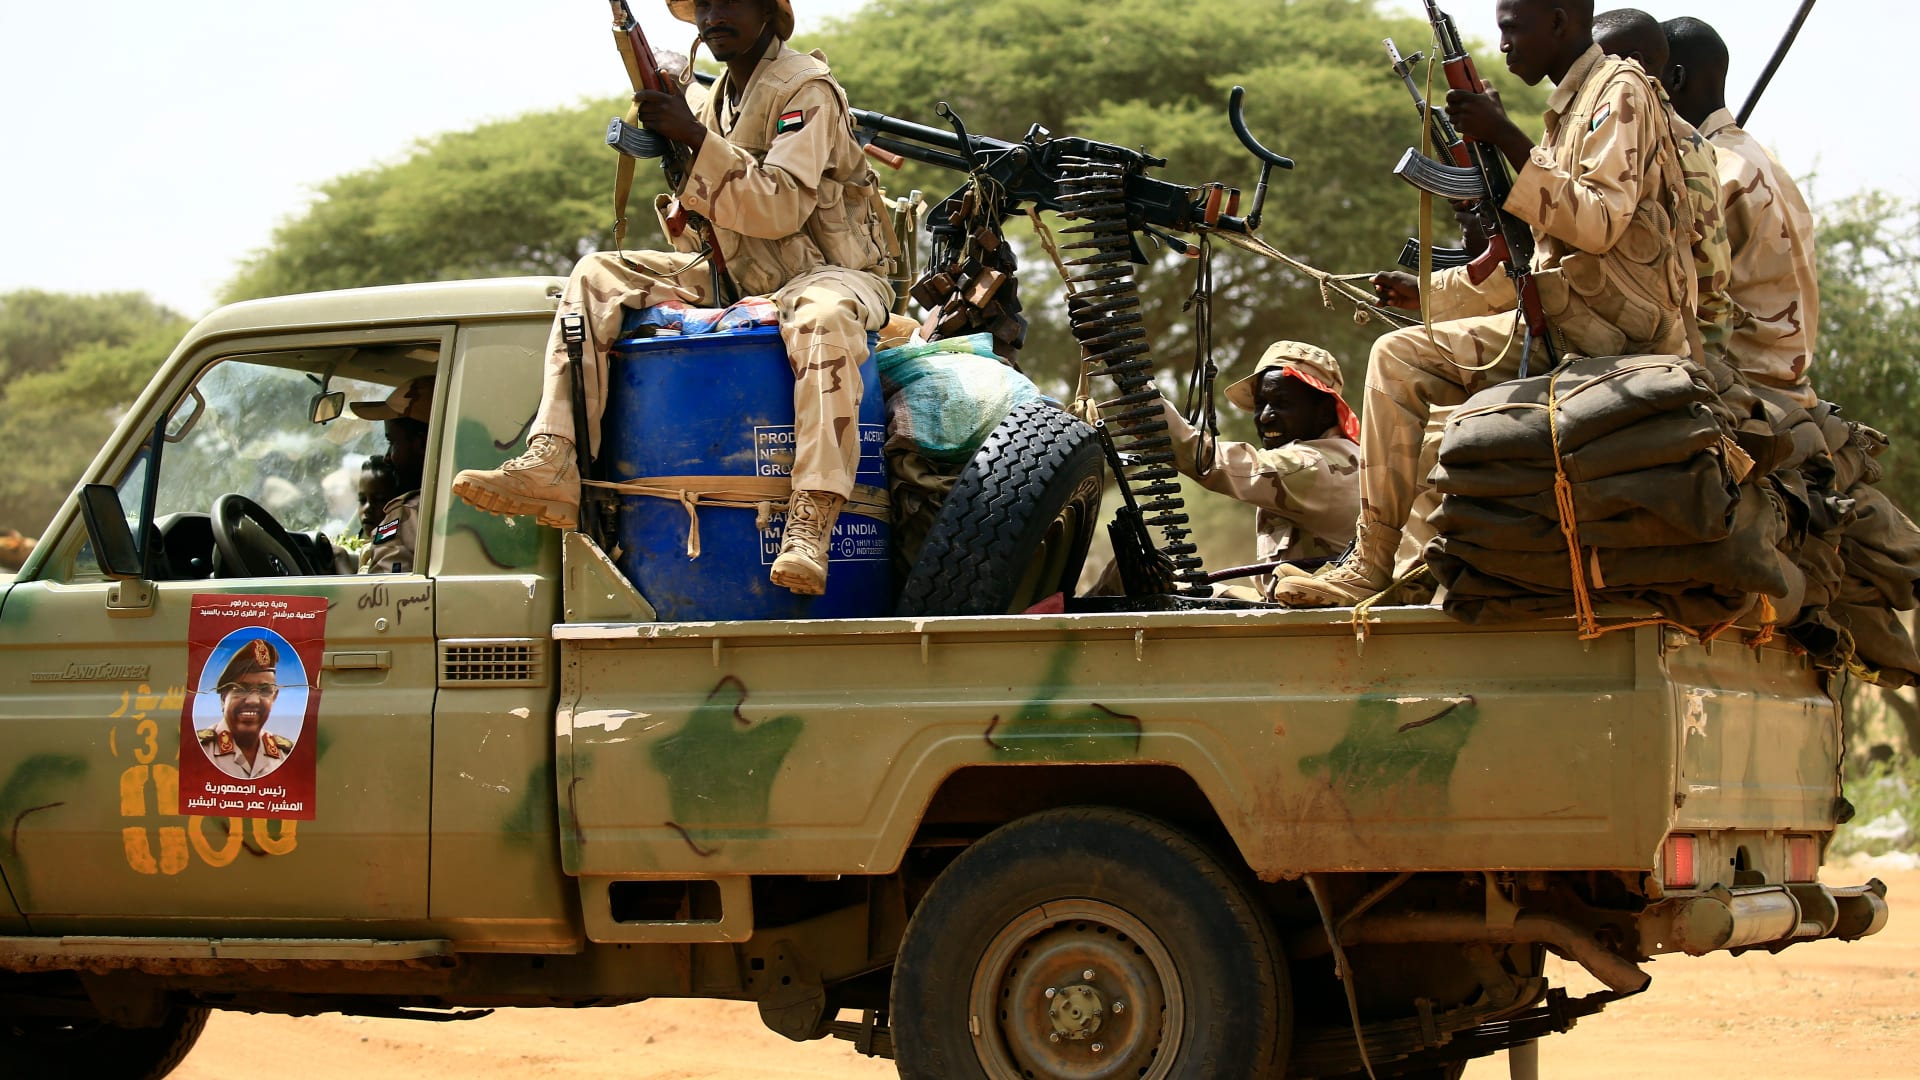 شهود عيان لـCNN: جنود يرتدون زي قوات الدعم السريع في السودان قمعوا المحتجين بـ"البلدوزر"